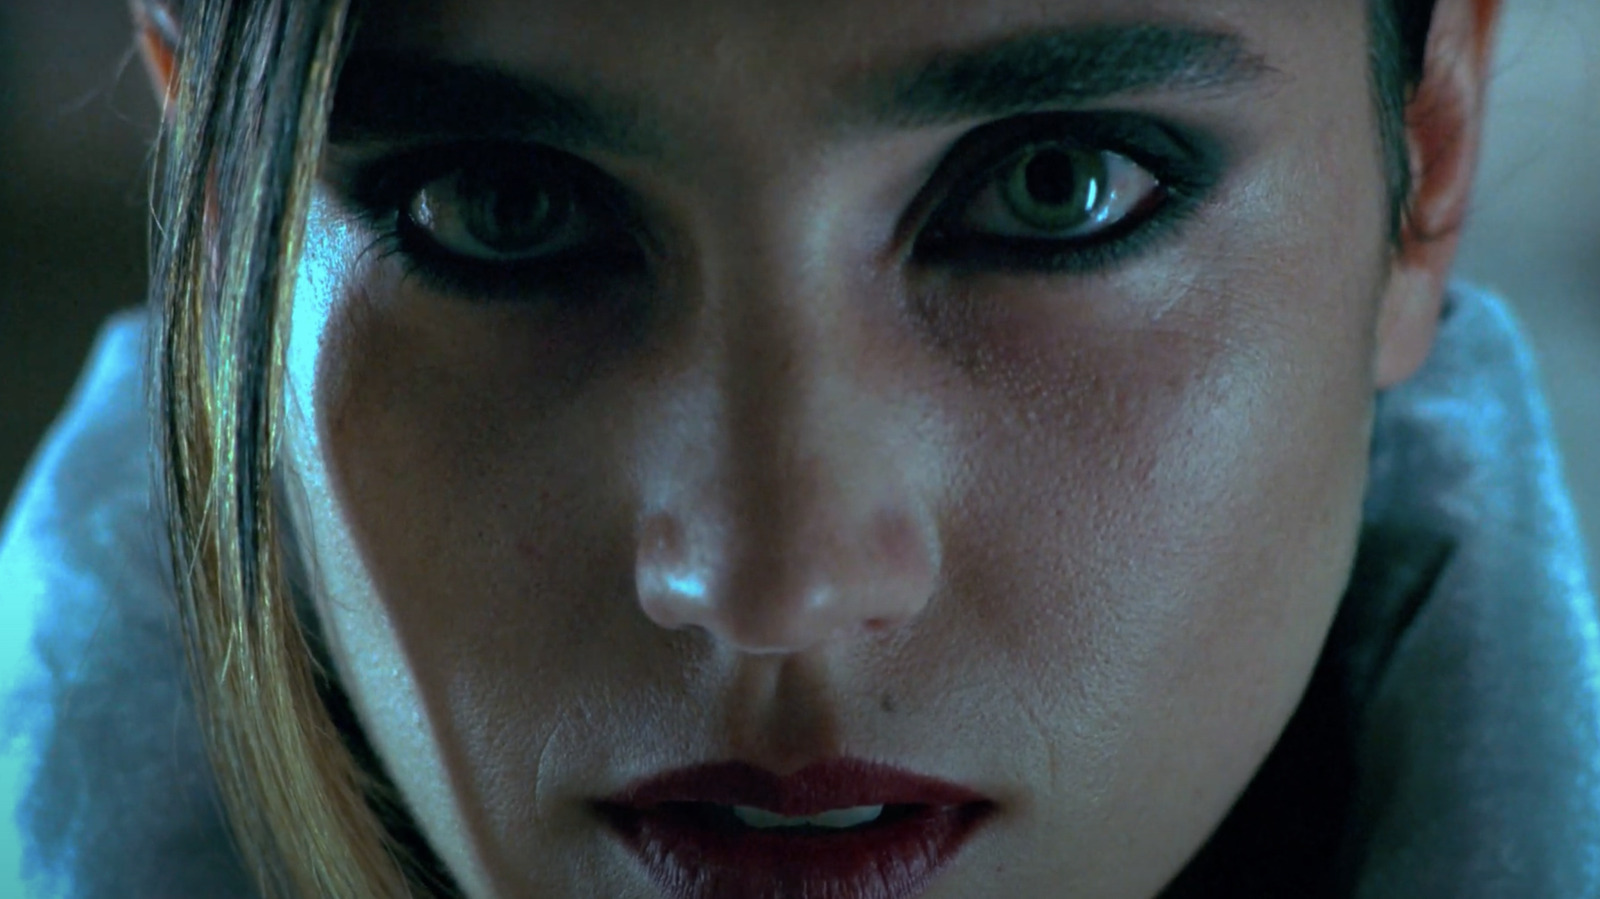 Requiem for a Dream: junkie movie que virou clássico